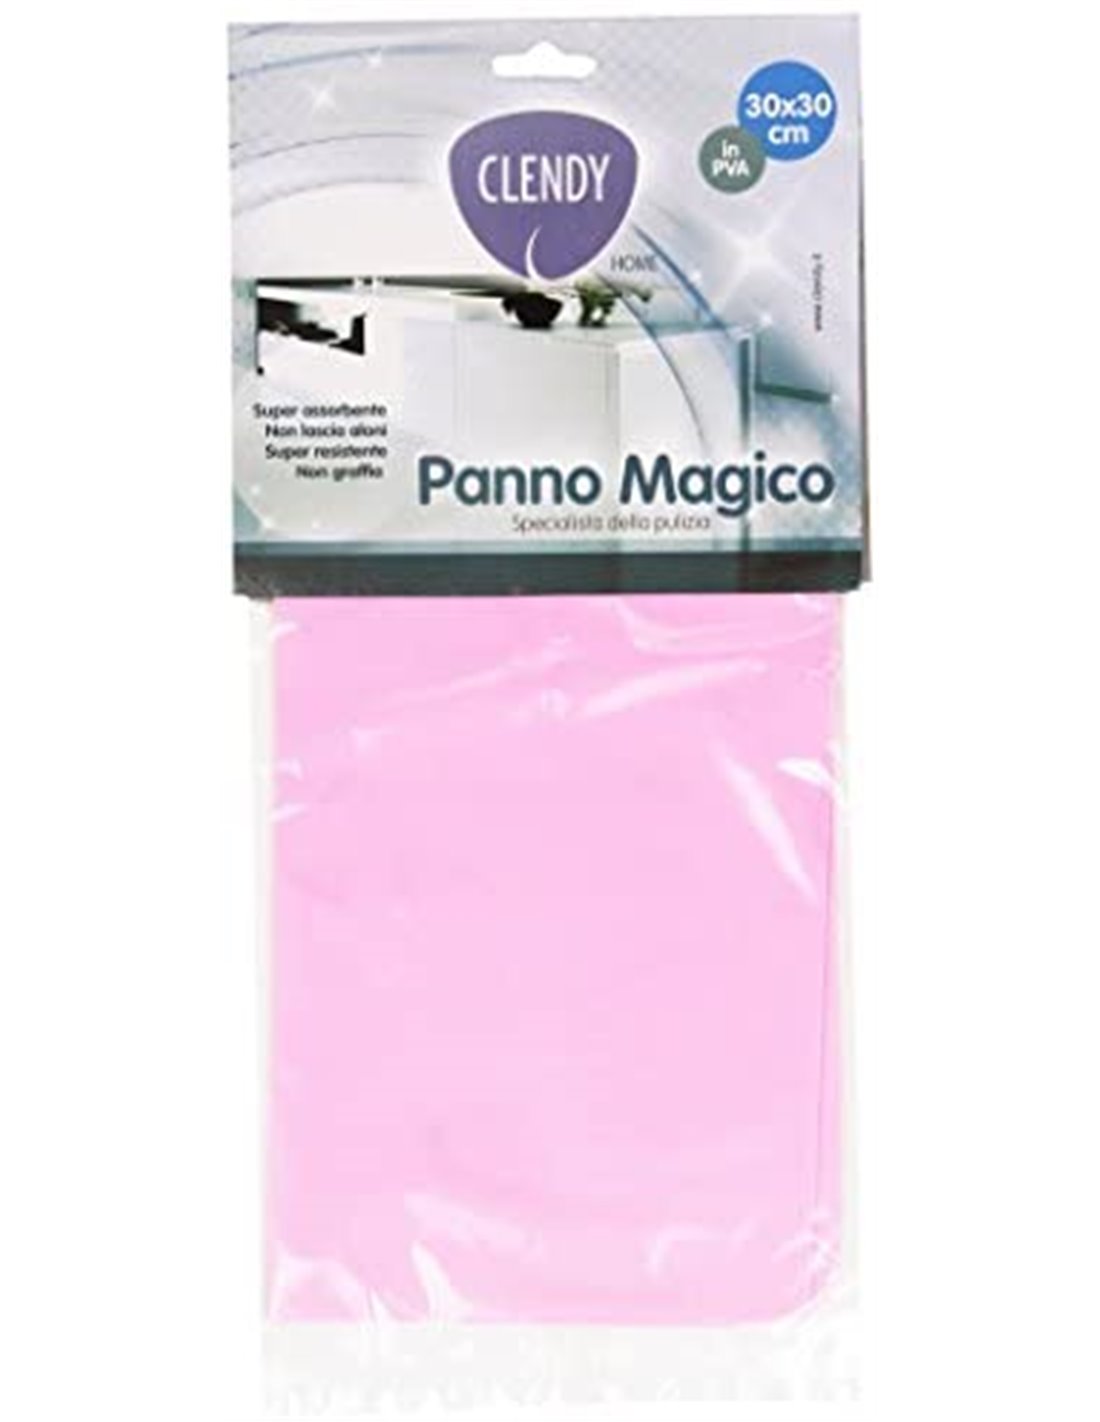 Clendy - Panno Magico, in PVA, 30 x 30 cm, Colori assortiti - [confezione  da 12]